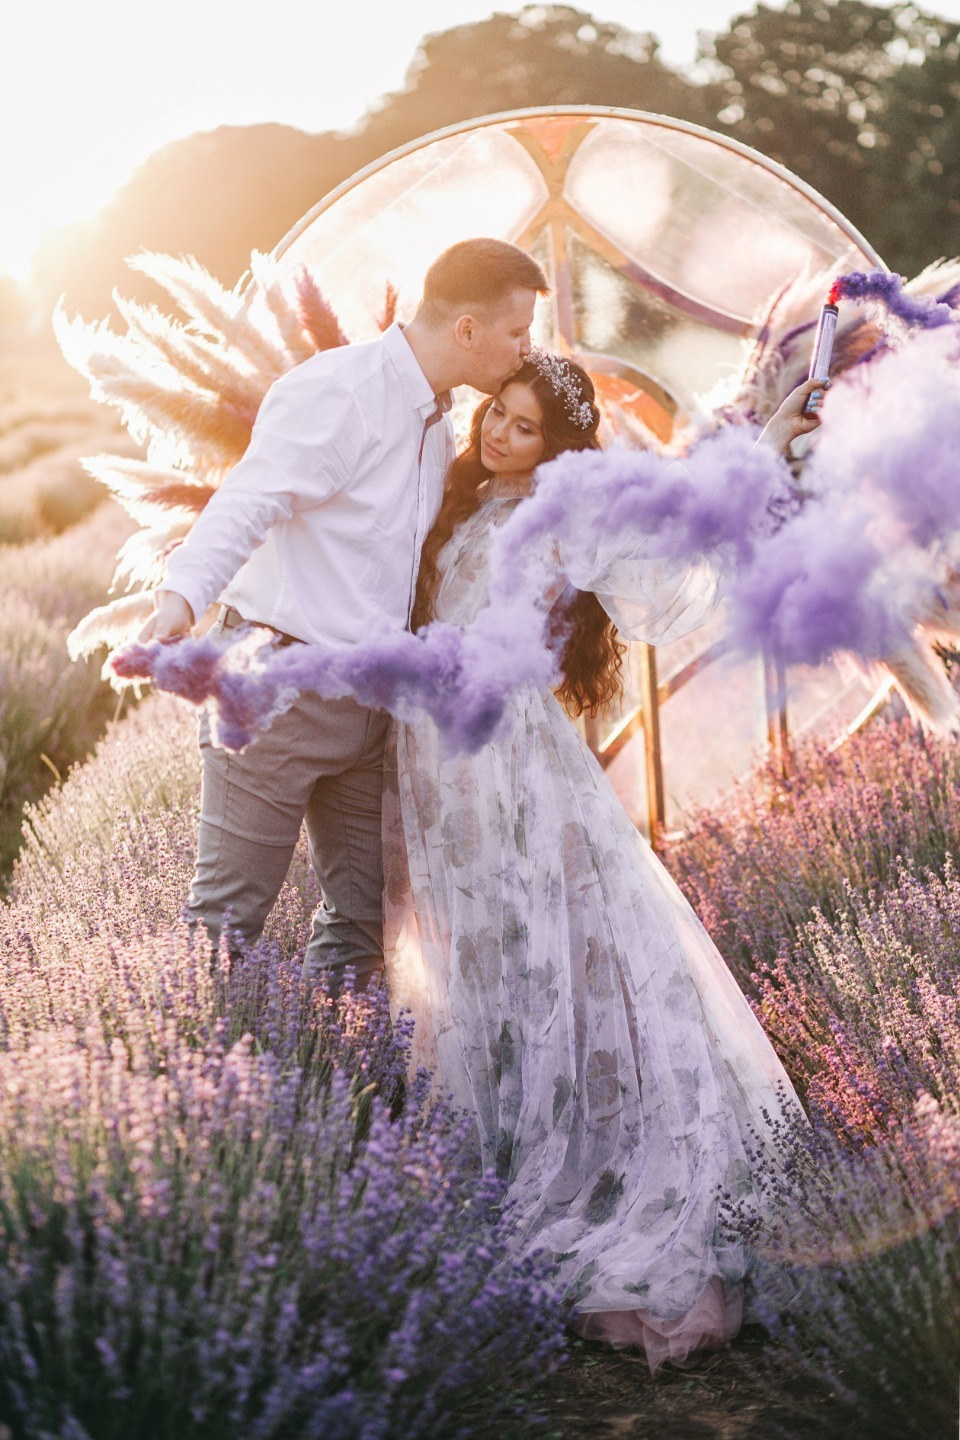 ФОТО ИЗ СТАТЬИ: Лавандовая мечта: воздушная свадьба в фиолетовых оттенках